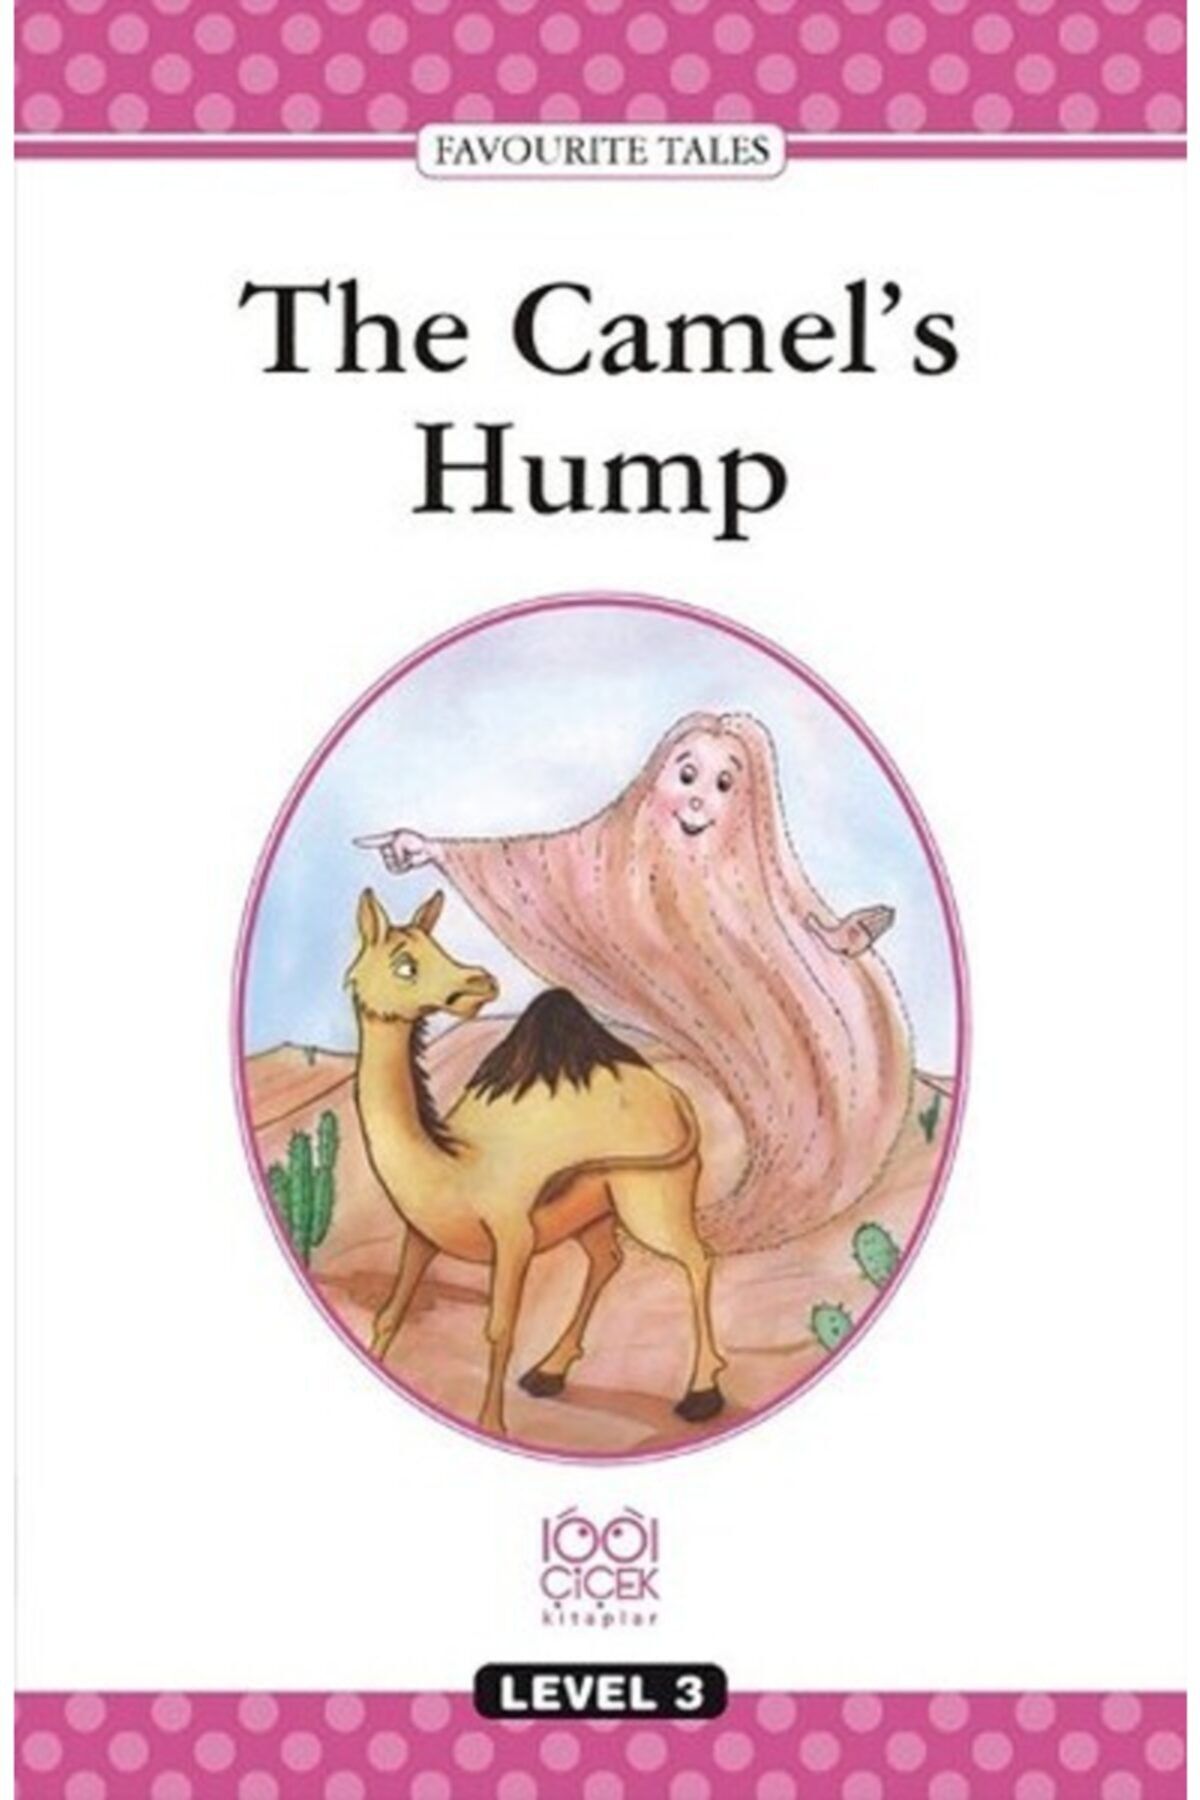 1001 Çiçek Kitaplar The Camel's Hump / Level 3